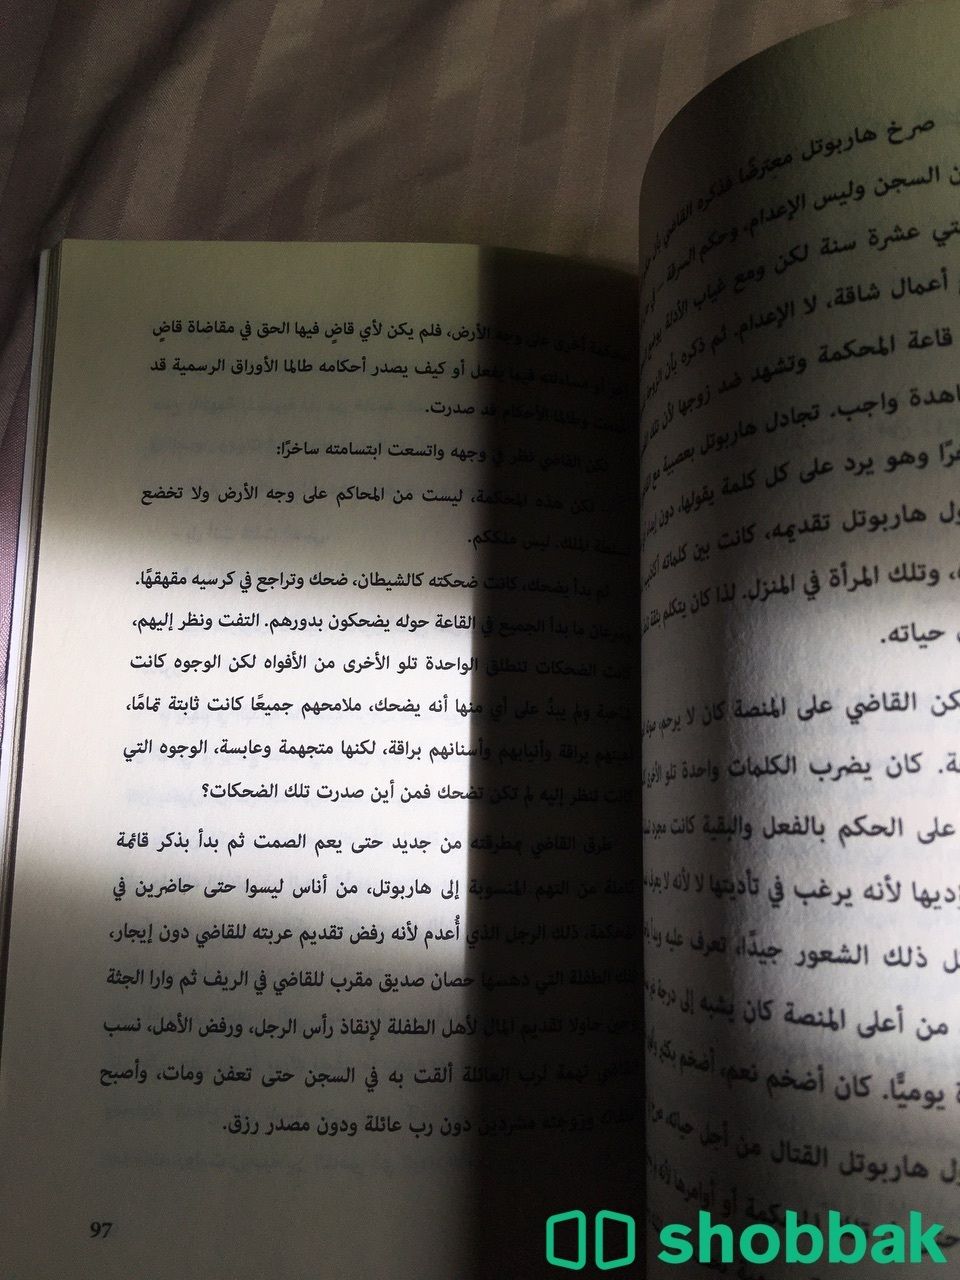 كتاب رعب و اكشن Shobbak Saudi Arabia